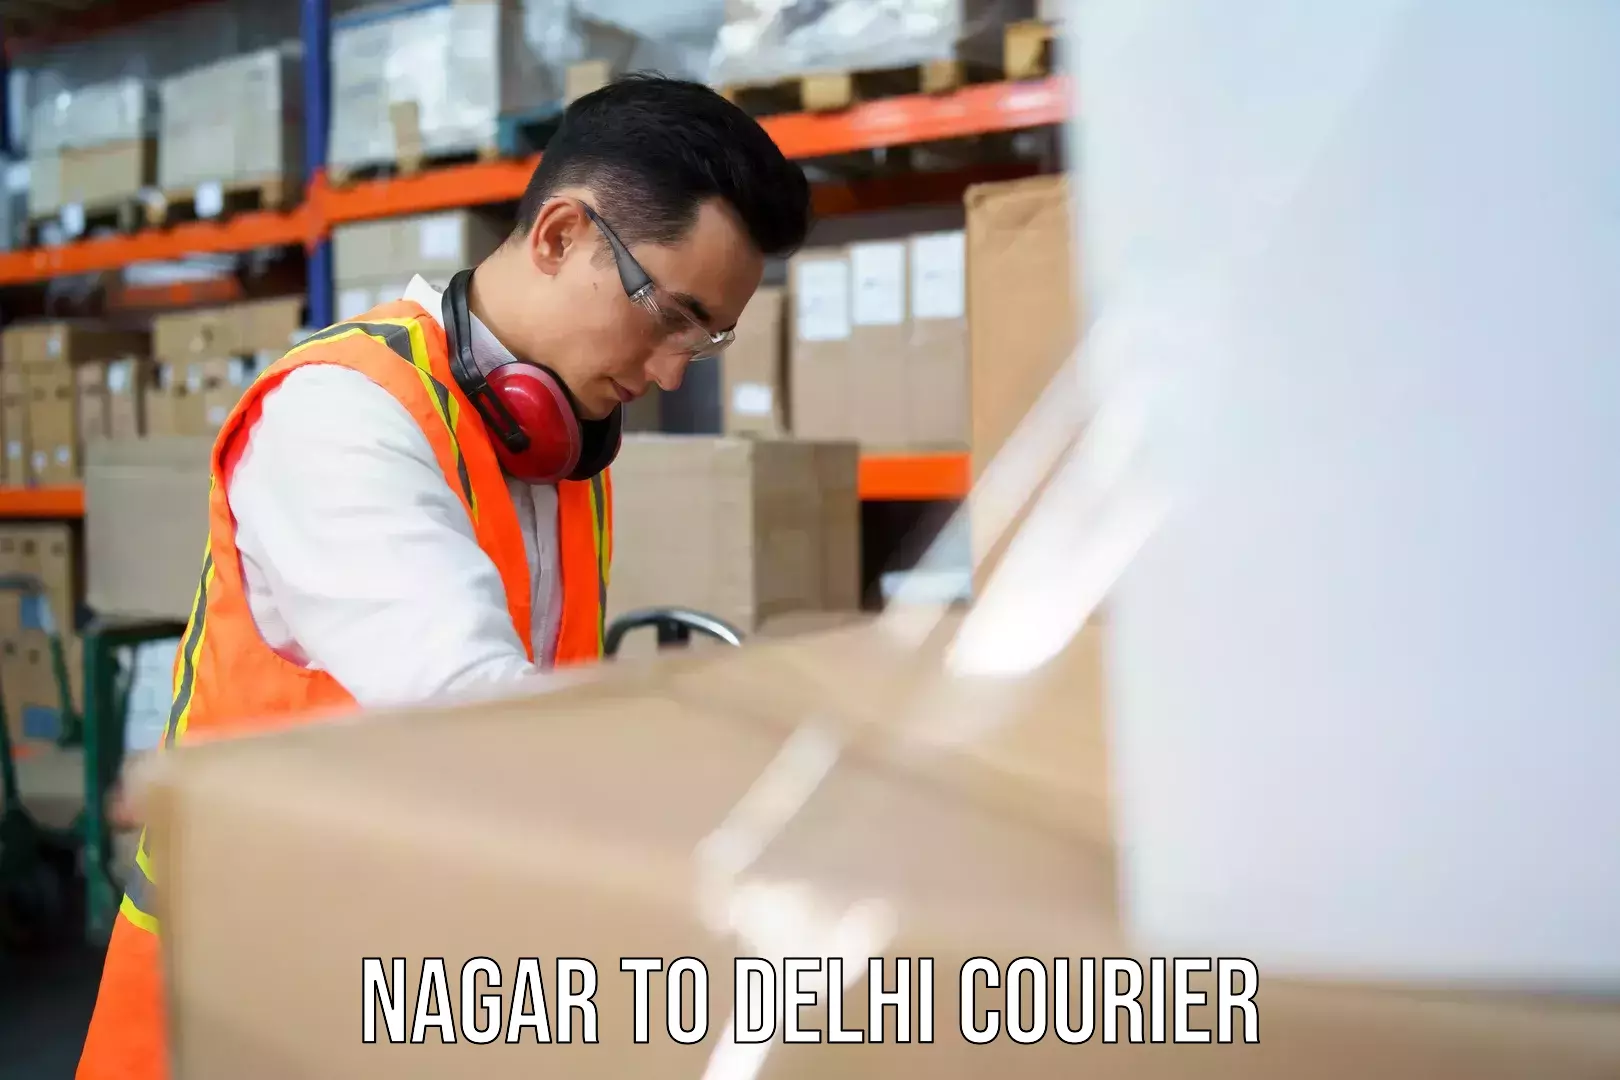 Door-to-door freight service Nagar to Delhi